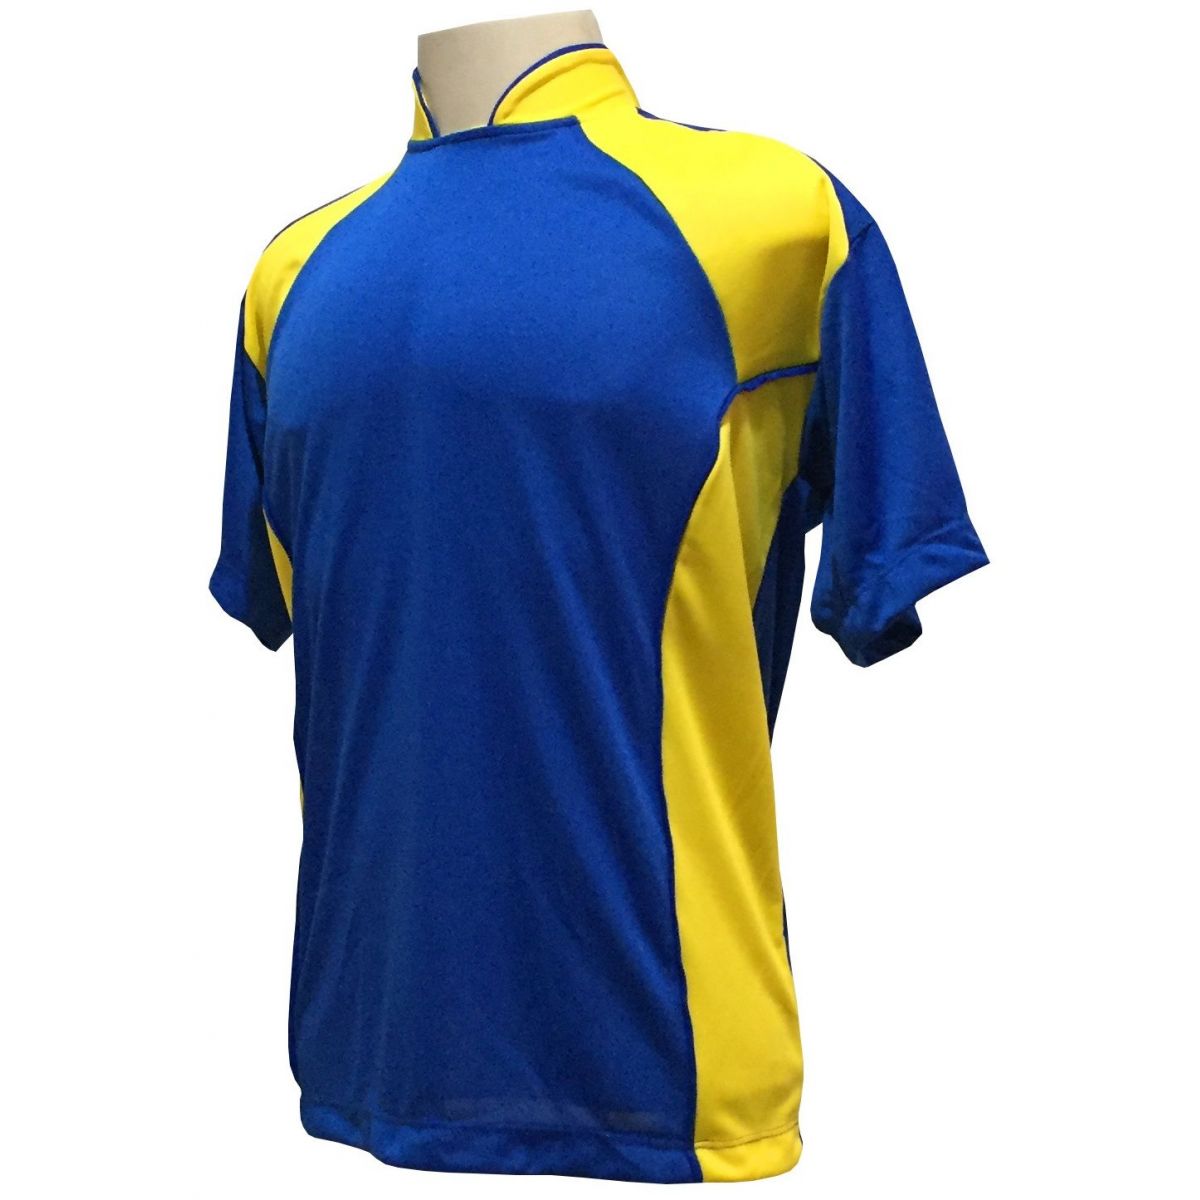 Uniforme Esportivo Completo modelo Suécia 14+1 (14 camisas Royal/Amarelo + 14 calções Madrid Amarelo + 14 pares de meiões Royal + 1 conjunto de goleiro) + Brindes